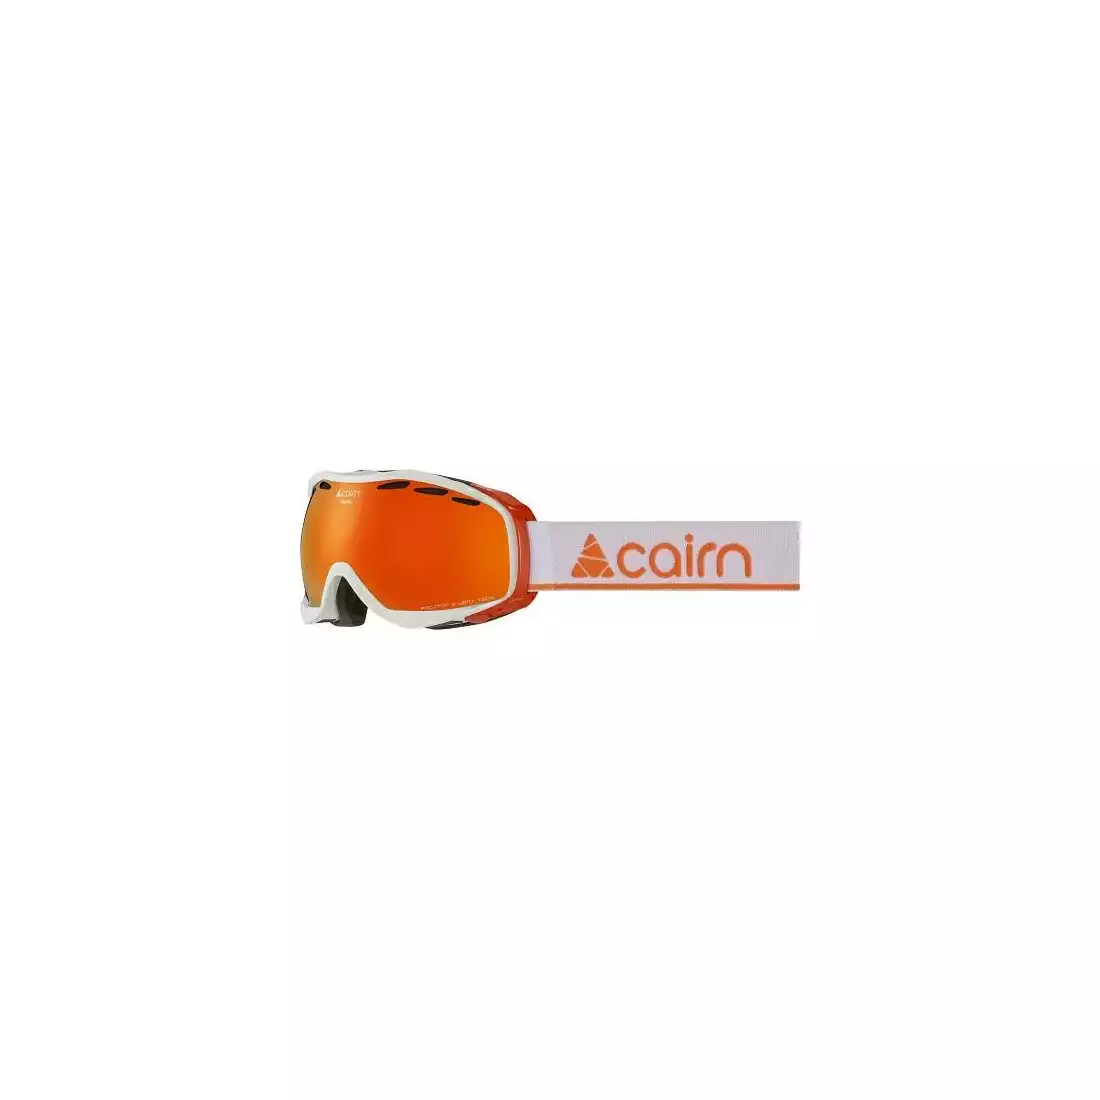 CAIRN gogle narciarskie/snowboardowe ALPHA SPX3000 IUM Shiny White Orange